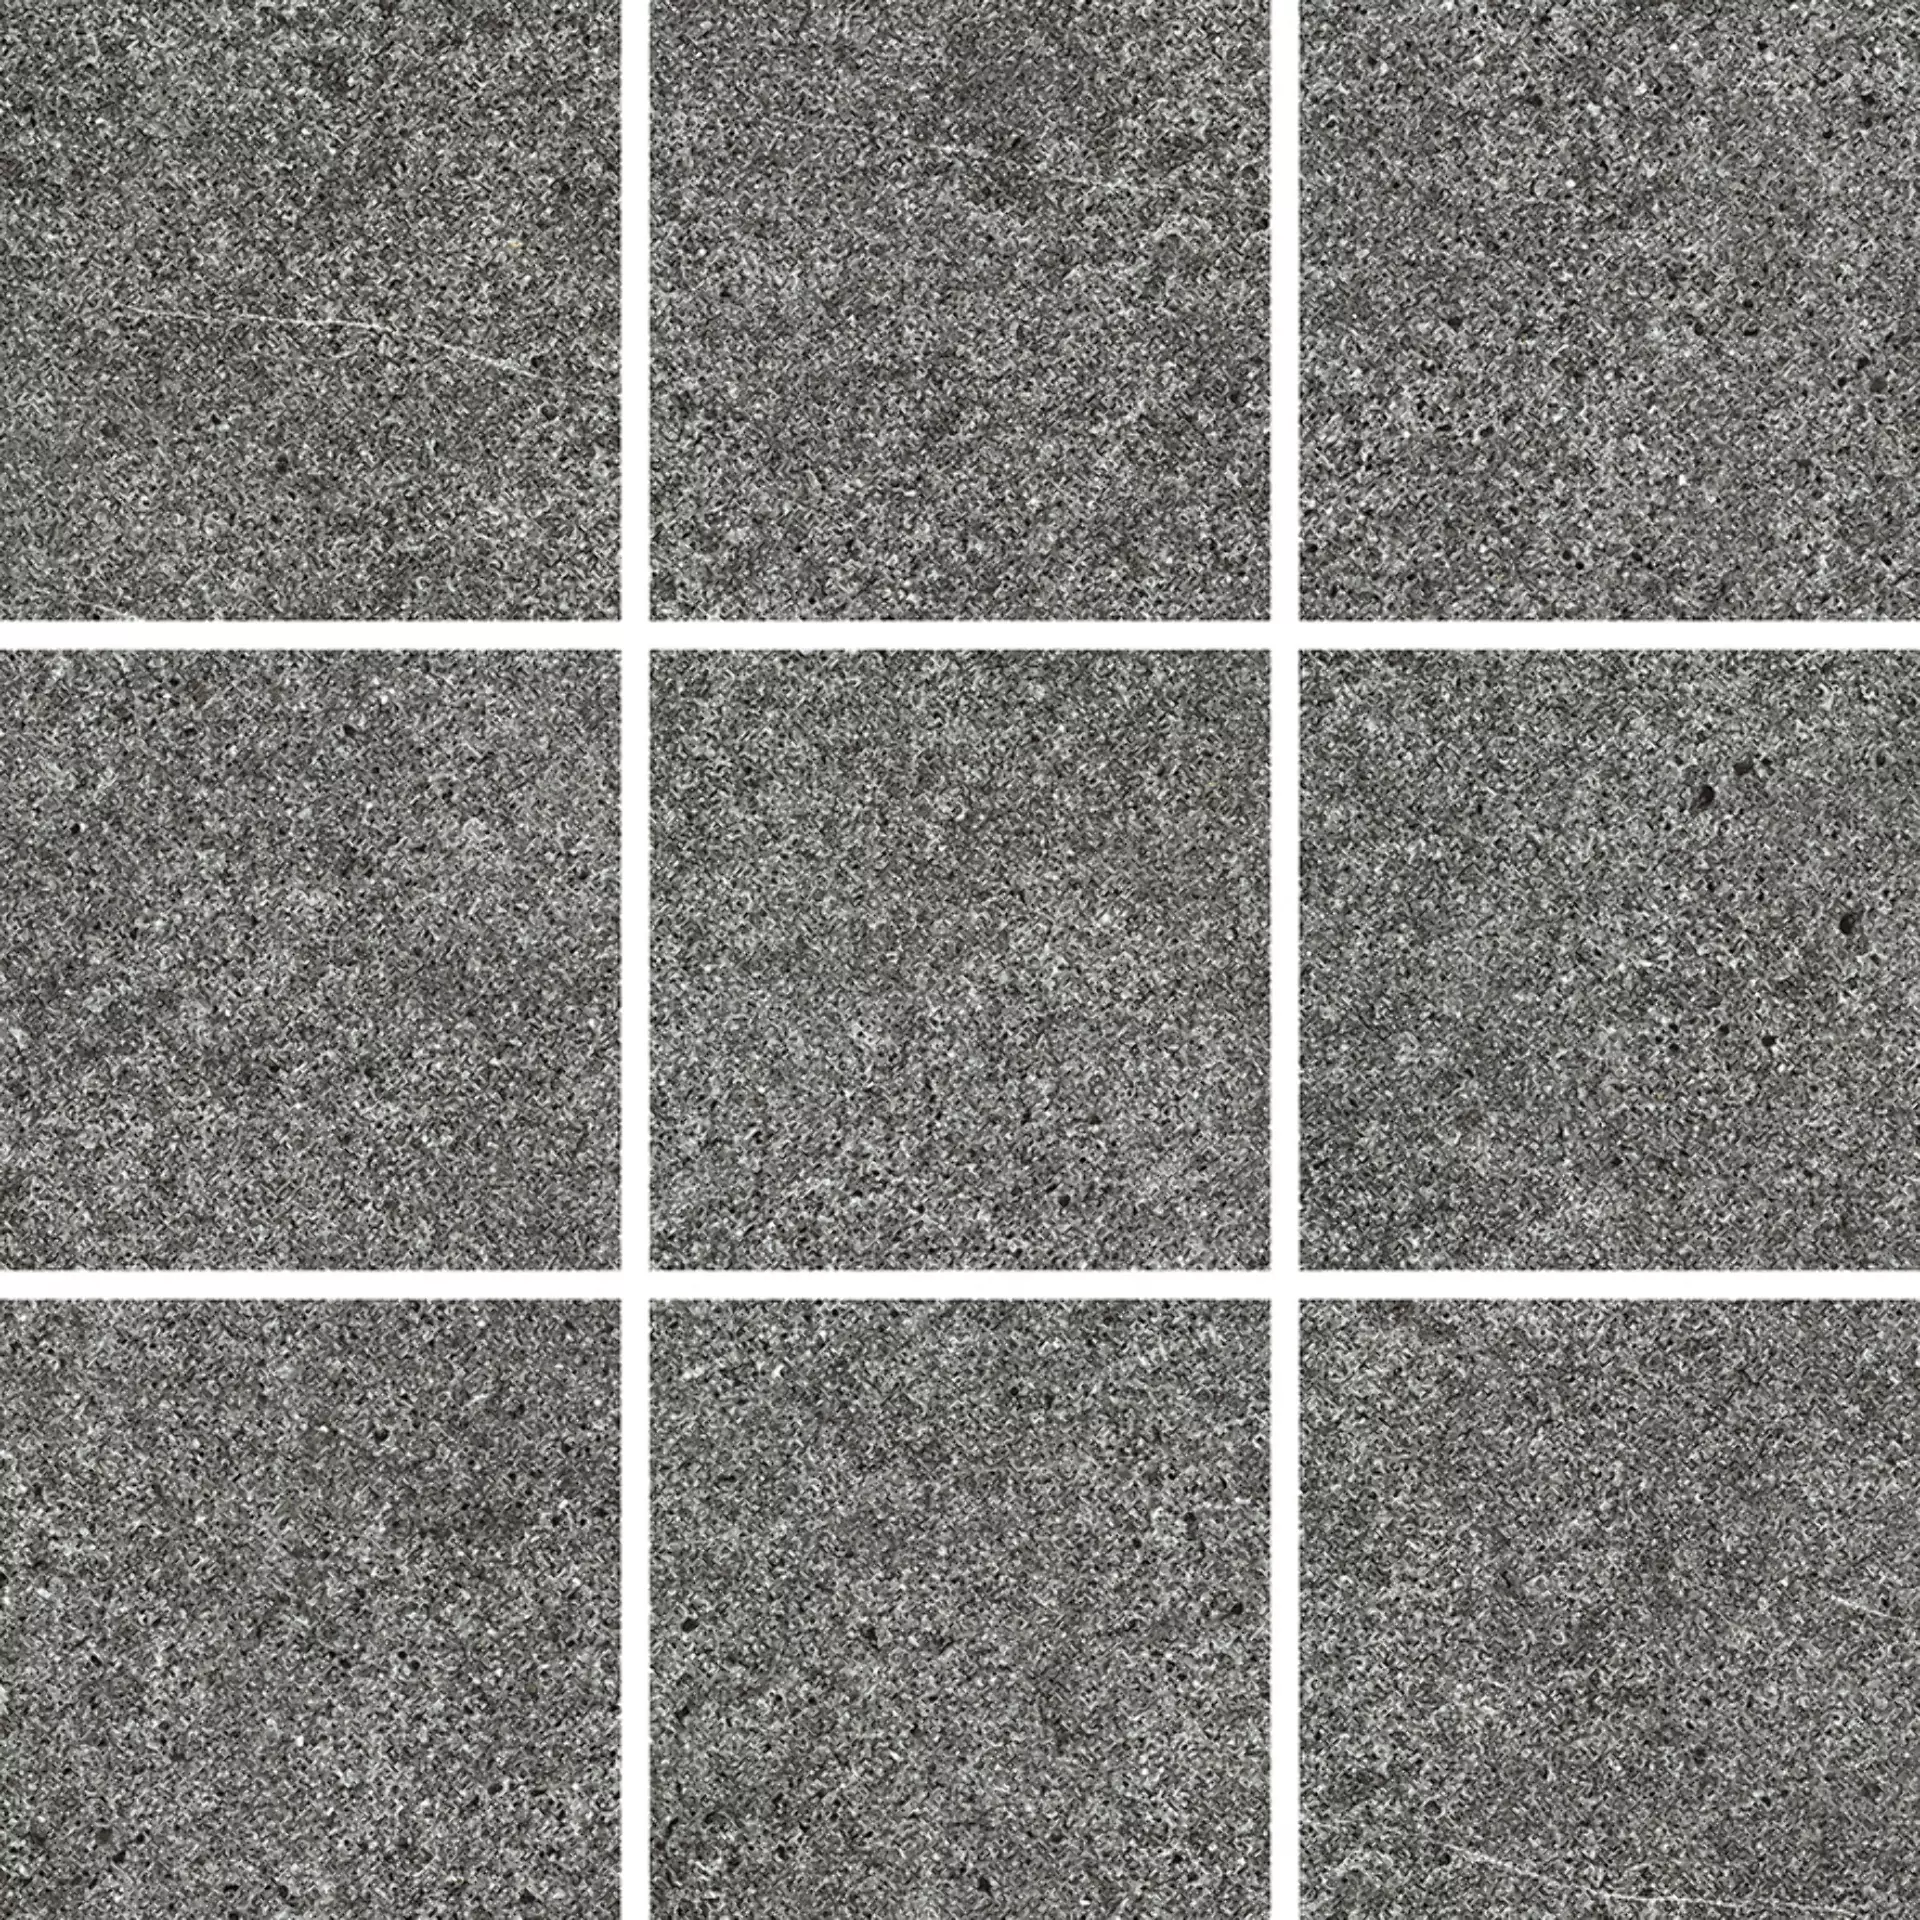 Wandfliese,Bodenfliese Villeroy & Boch Solid Tones Dark Stone Matt Dark Stone 2012-PS62 matt 10x10cm rektifiziert 10mm